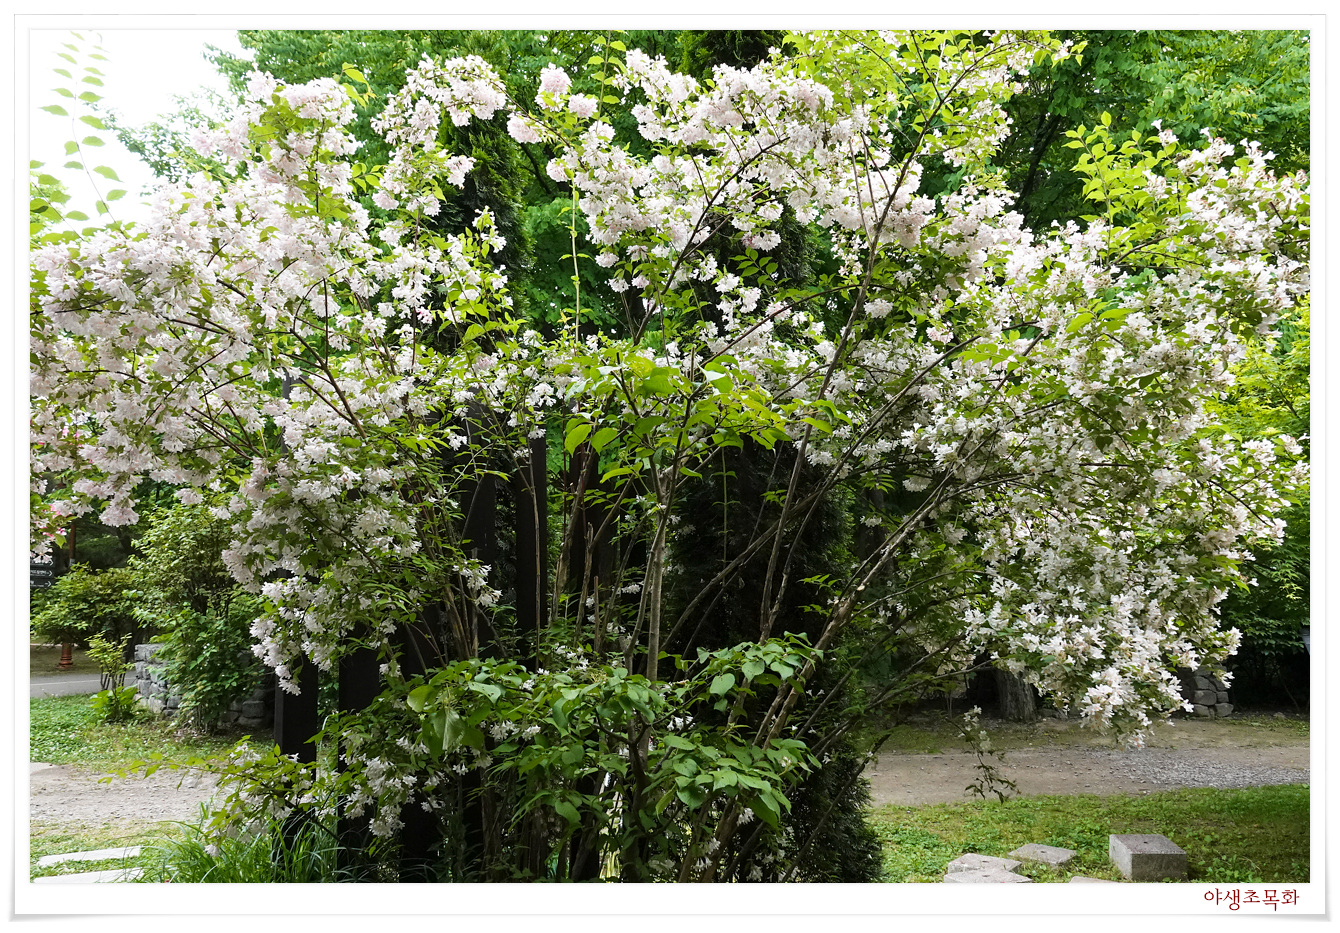 흰 꽃이 탐스럽게 핀 위실나무가 가지를 늘어뜨리고 있는 사진